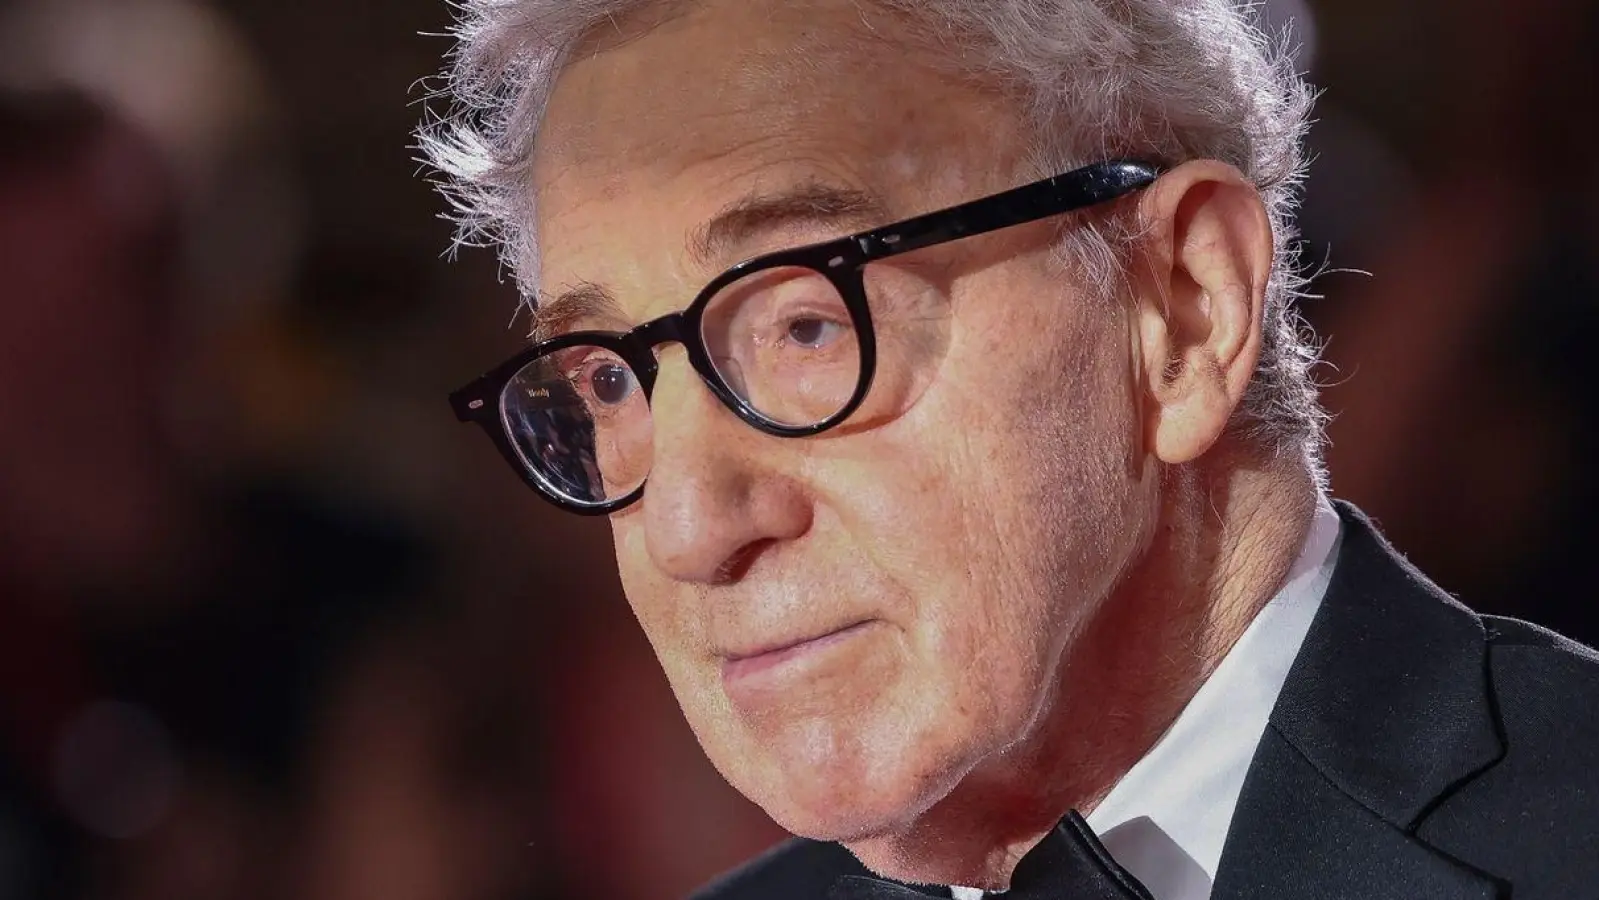 Woody Allen, jüdischer Regisseur aus den USA, spricht in einem Interview über Antisemitismus. (Foto: Vianney Le Caer/Invision/AP/dpa)